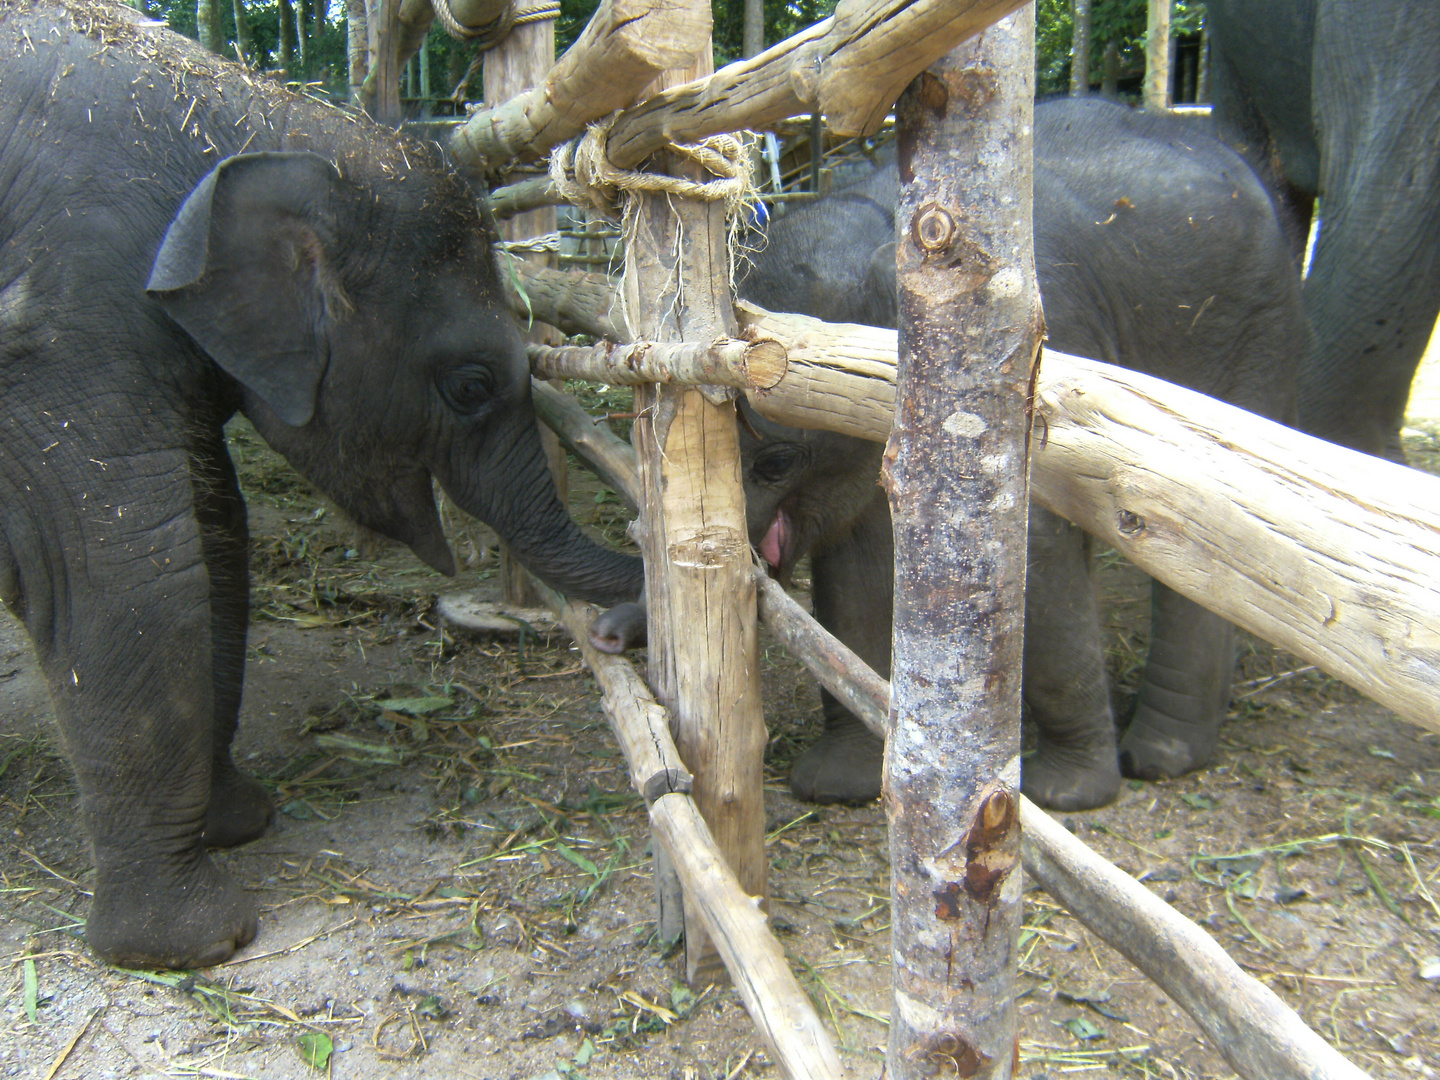 Elefanten beim schmusen